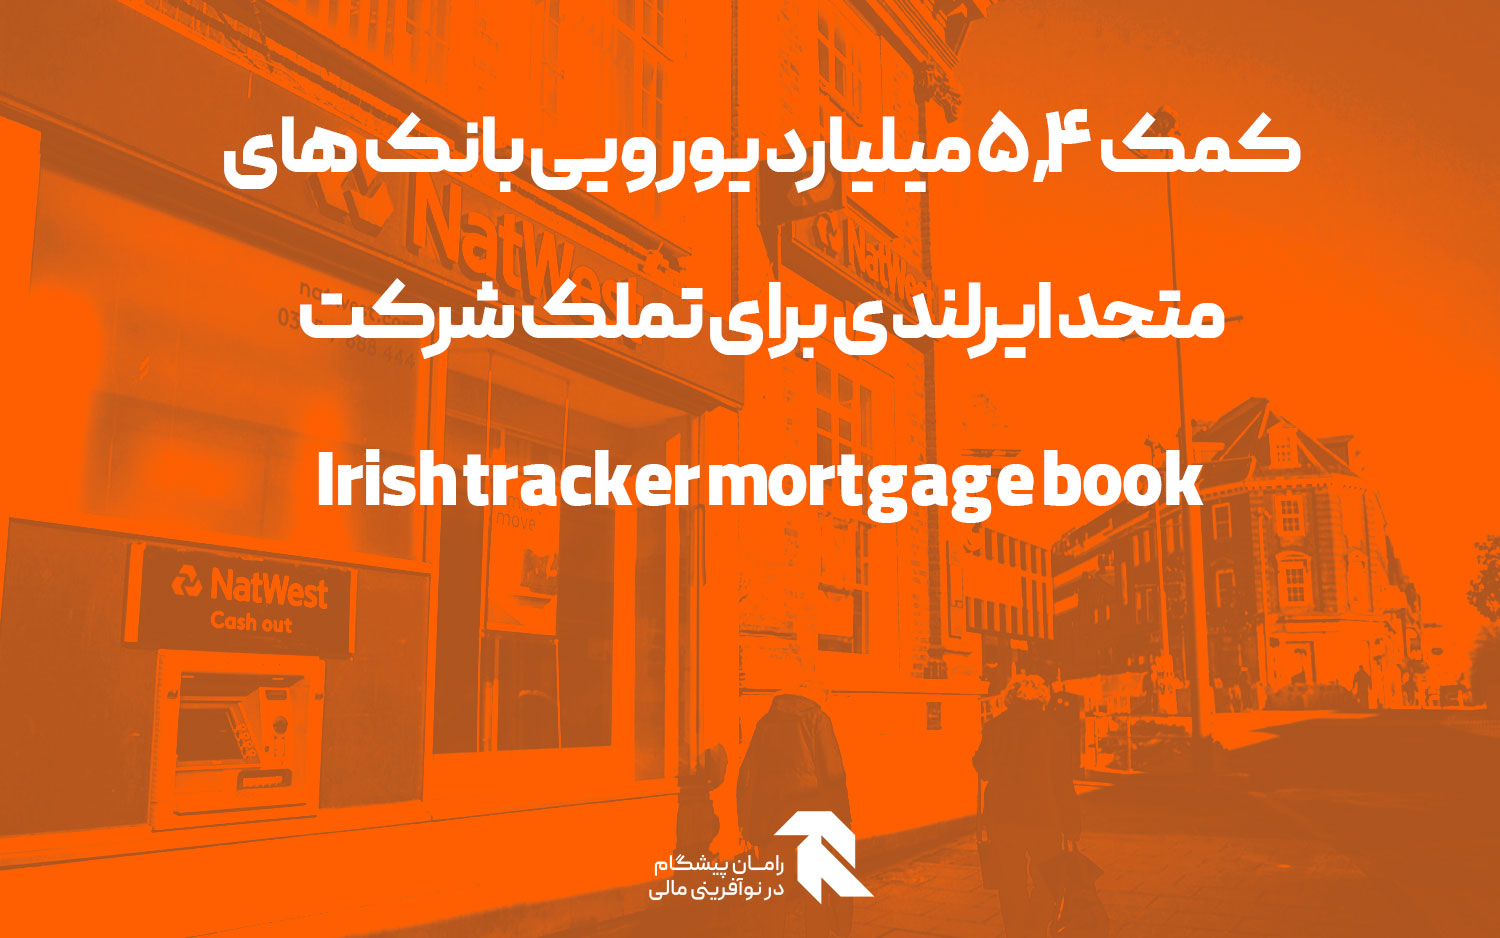 کمک ۵.۴ میلیارد یورویی بانک های متحد ایرلندی برای تملک شرکت Irish tracker mortgage book